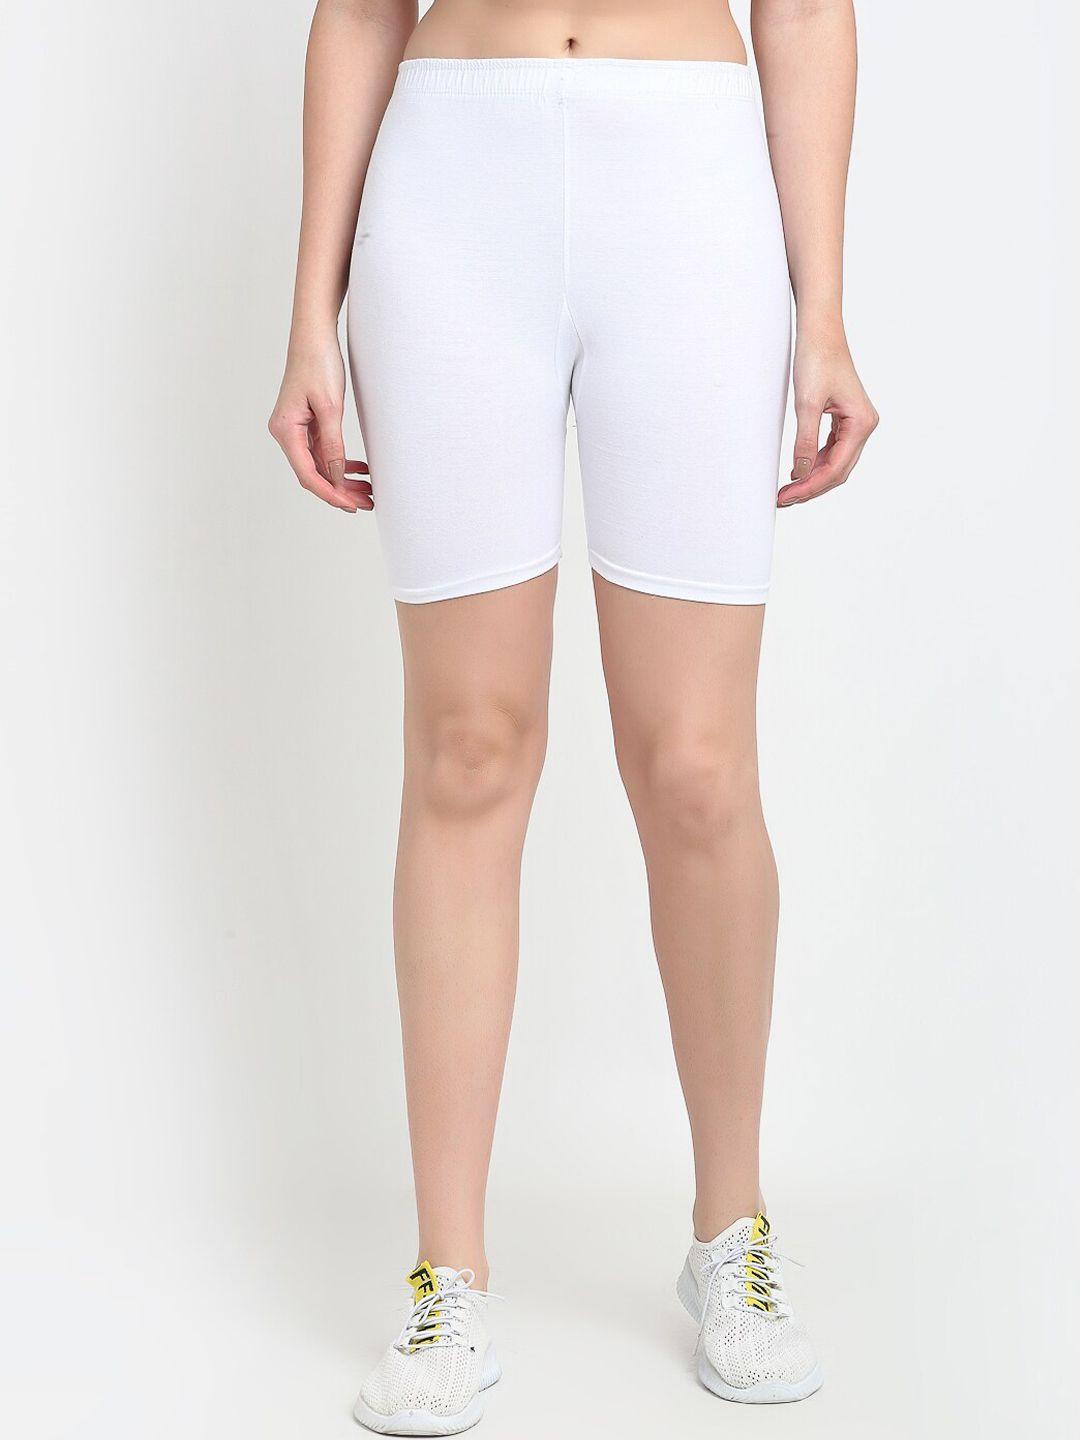 GRACIT Women White Biker Shorts